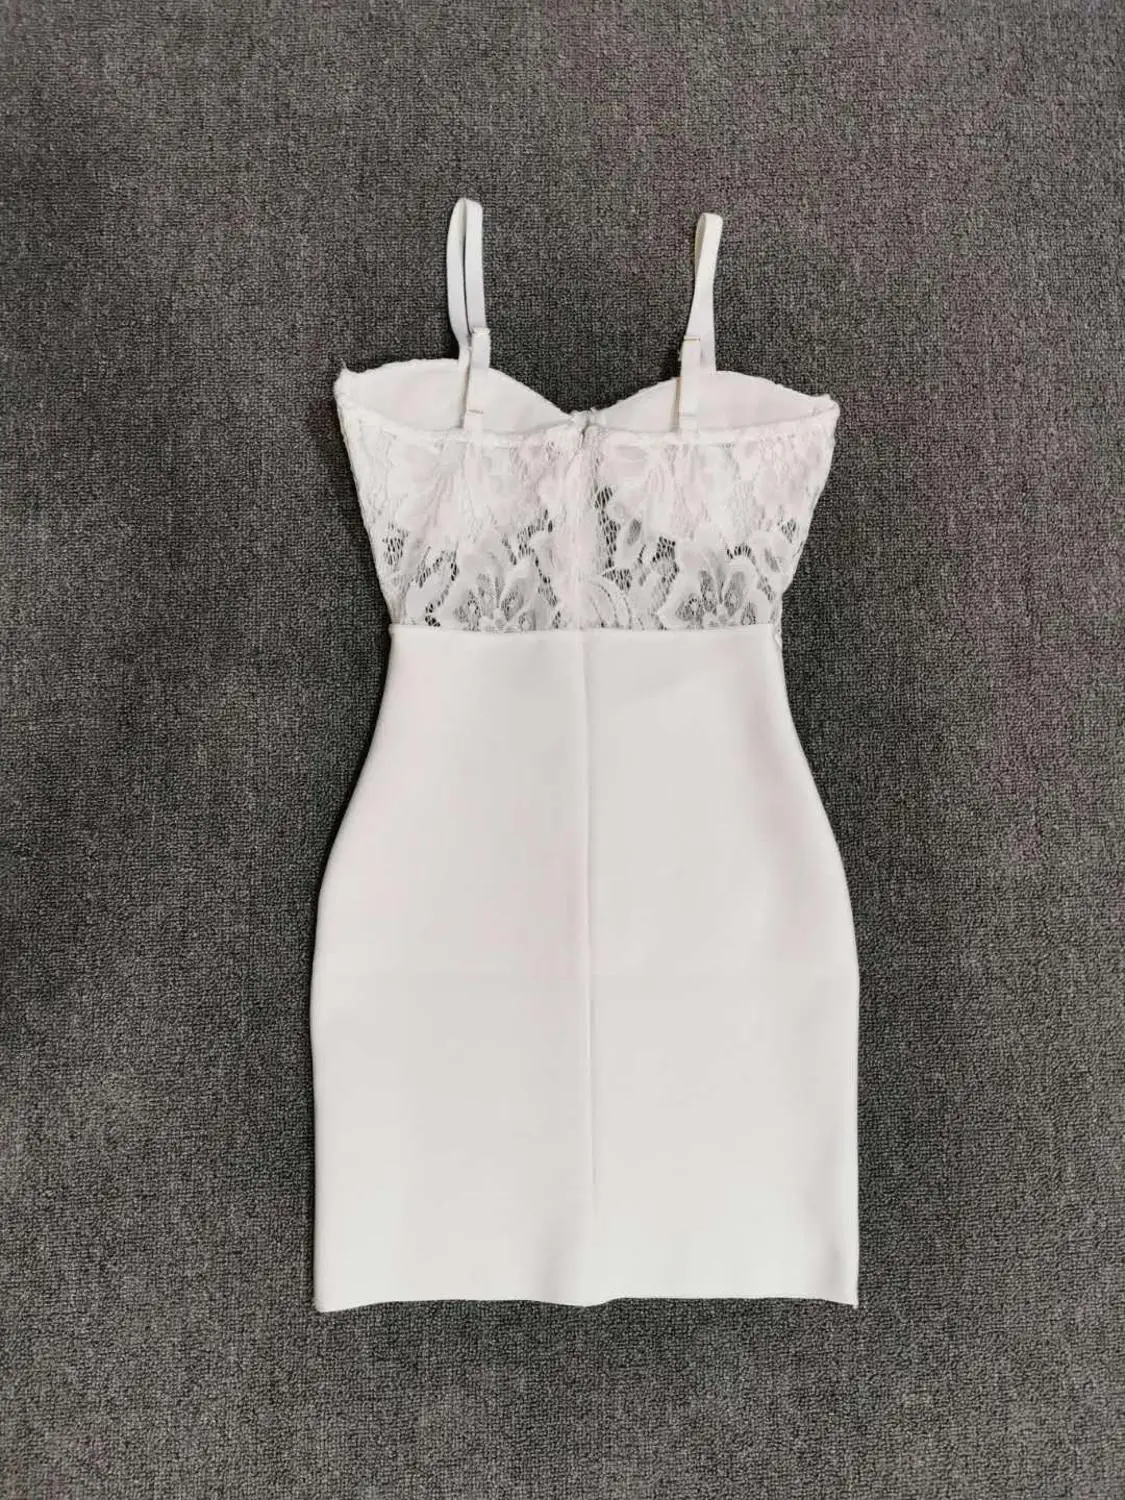 Летнее платье Для женщин сексуальное летнее платье модное Кружевное белое Бандажное платье Элегантное облегающее Мини Вечерние Платье Vestido